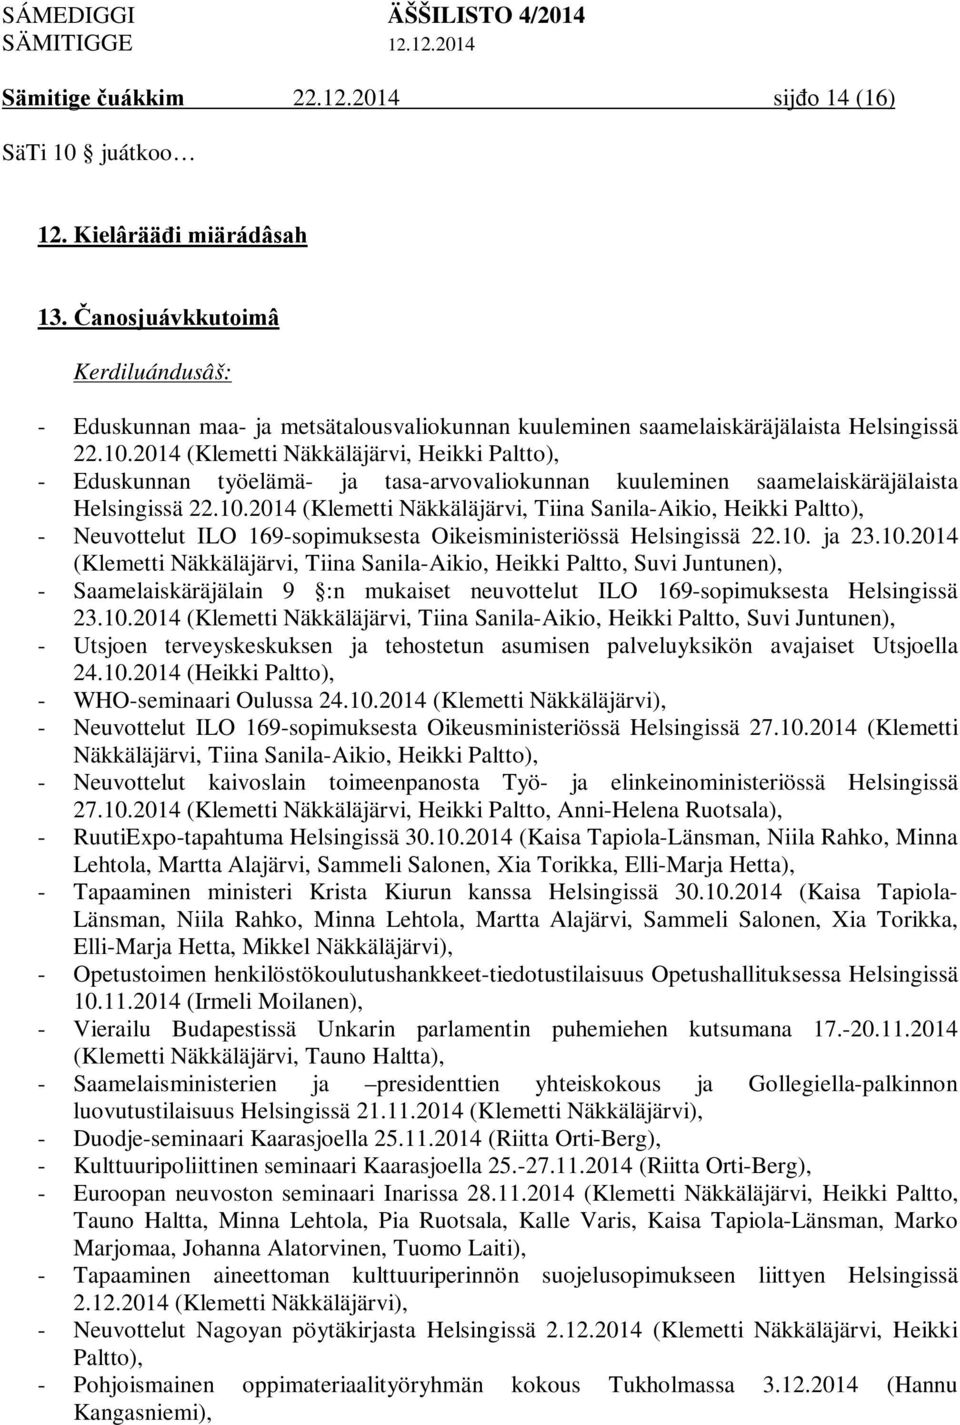 2014 (Klemetti Näkkäläjärvi, Heikki Paltto), - Eduskunnan työelämä- ja tasa-arvovaliokunnan kuuleminen saamelaiskäräjälaista Helsingissä 22.10.